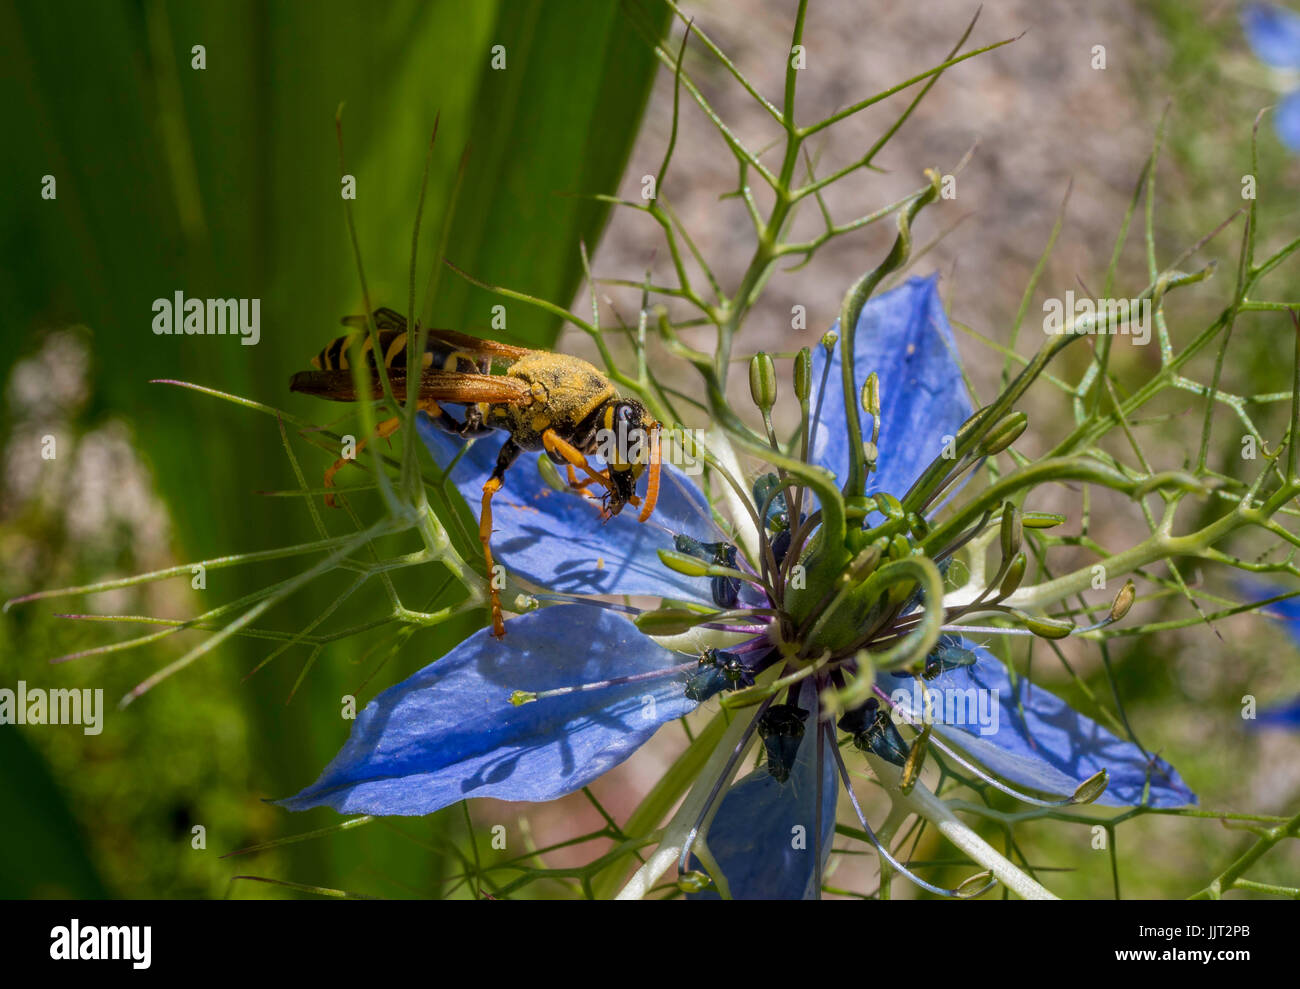 Wespe auf der Blume eine Nigella Damascena. Liebe im Nebel Blume, Bayern, Deutschland, Europa Stockfoto